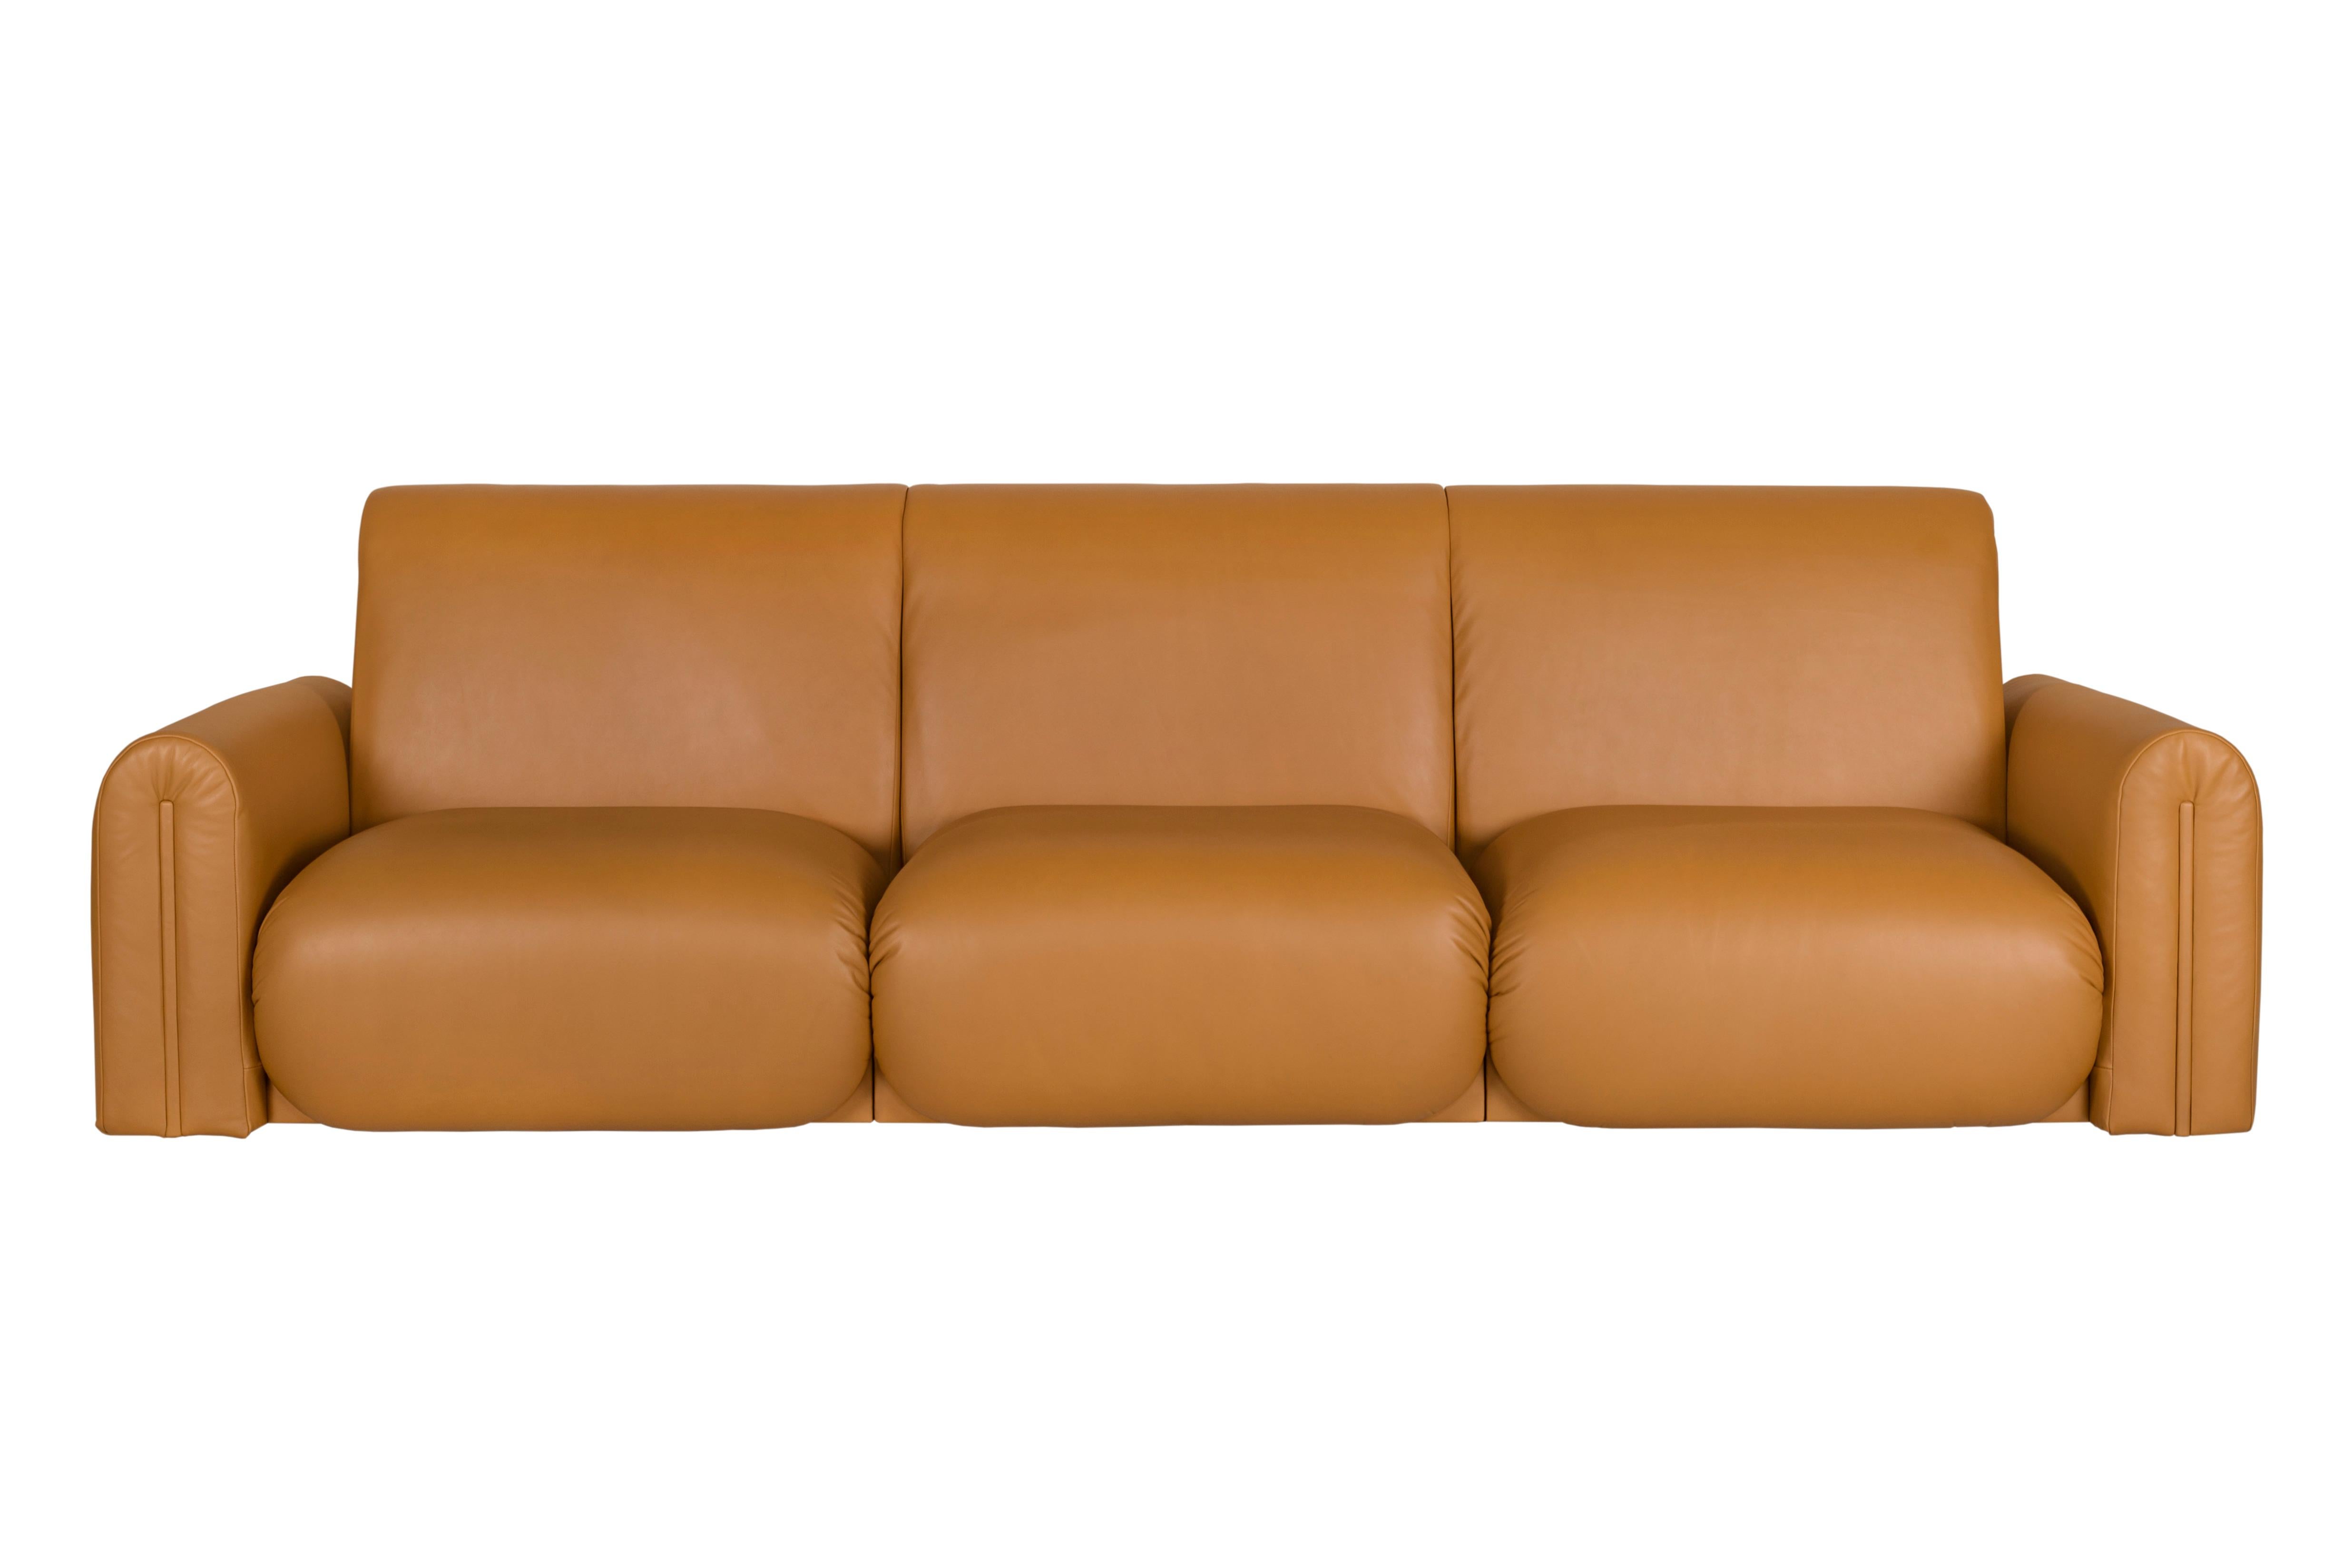 Beijinho 4-sitziges Sofa, Contemporary Collection, handgefertigt in Portugal - Europa von Greenapple.

Das Ledersofa Beijinho verbindet nahtlos die weiche Textur von hochwertigem Leder mit dem einhüllenden, getufteten Komfort und schafft so ein